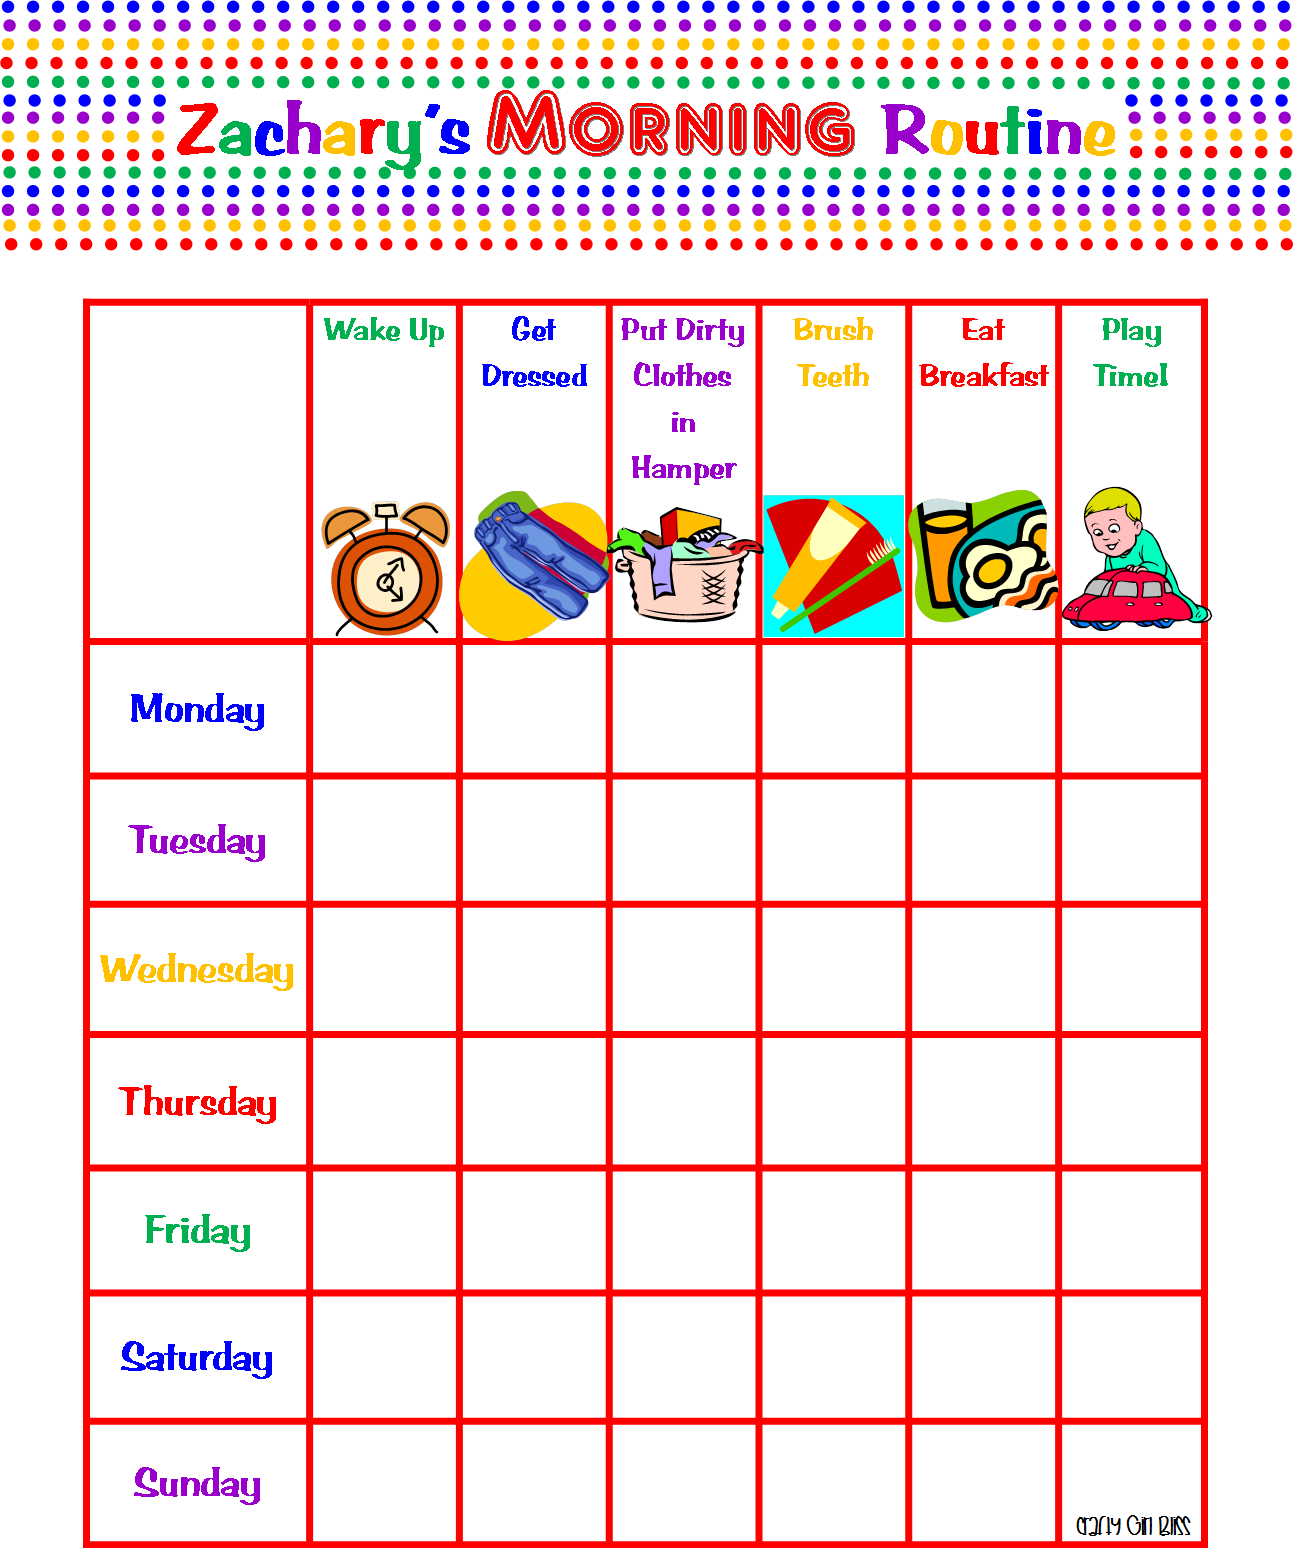 summer-schedule-for-kids-kids-summer-schedule-kids-schedule-summer-fun-for-kids